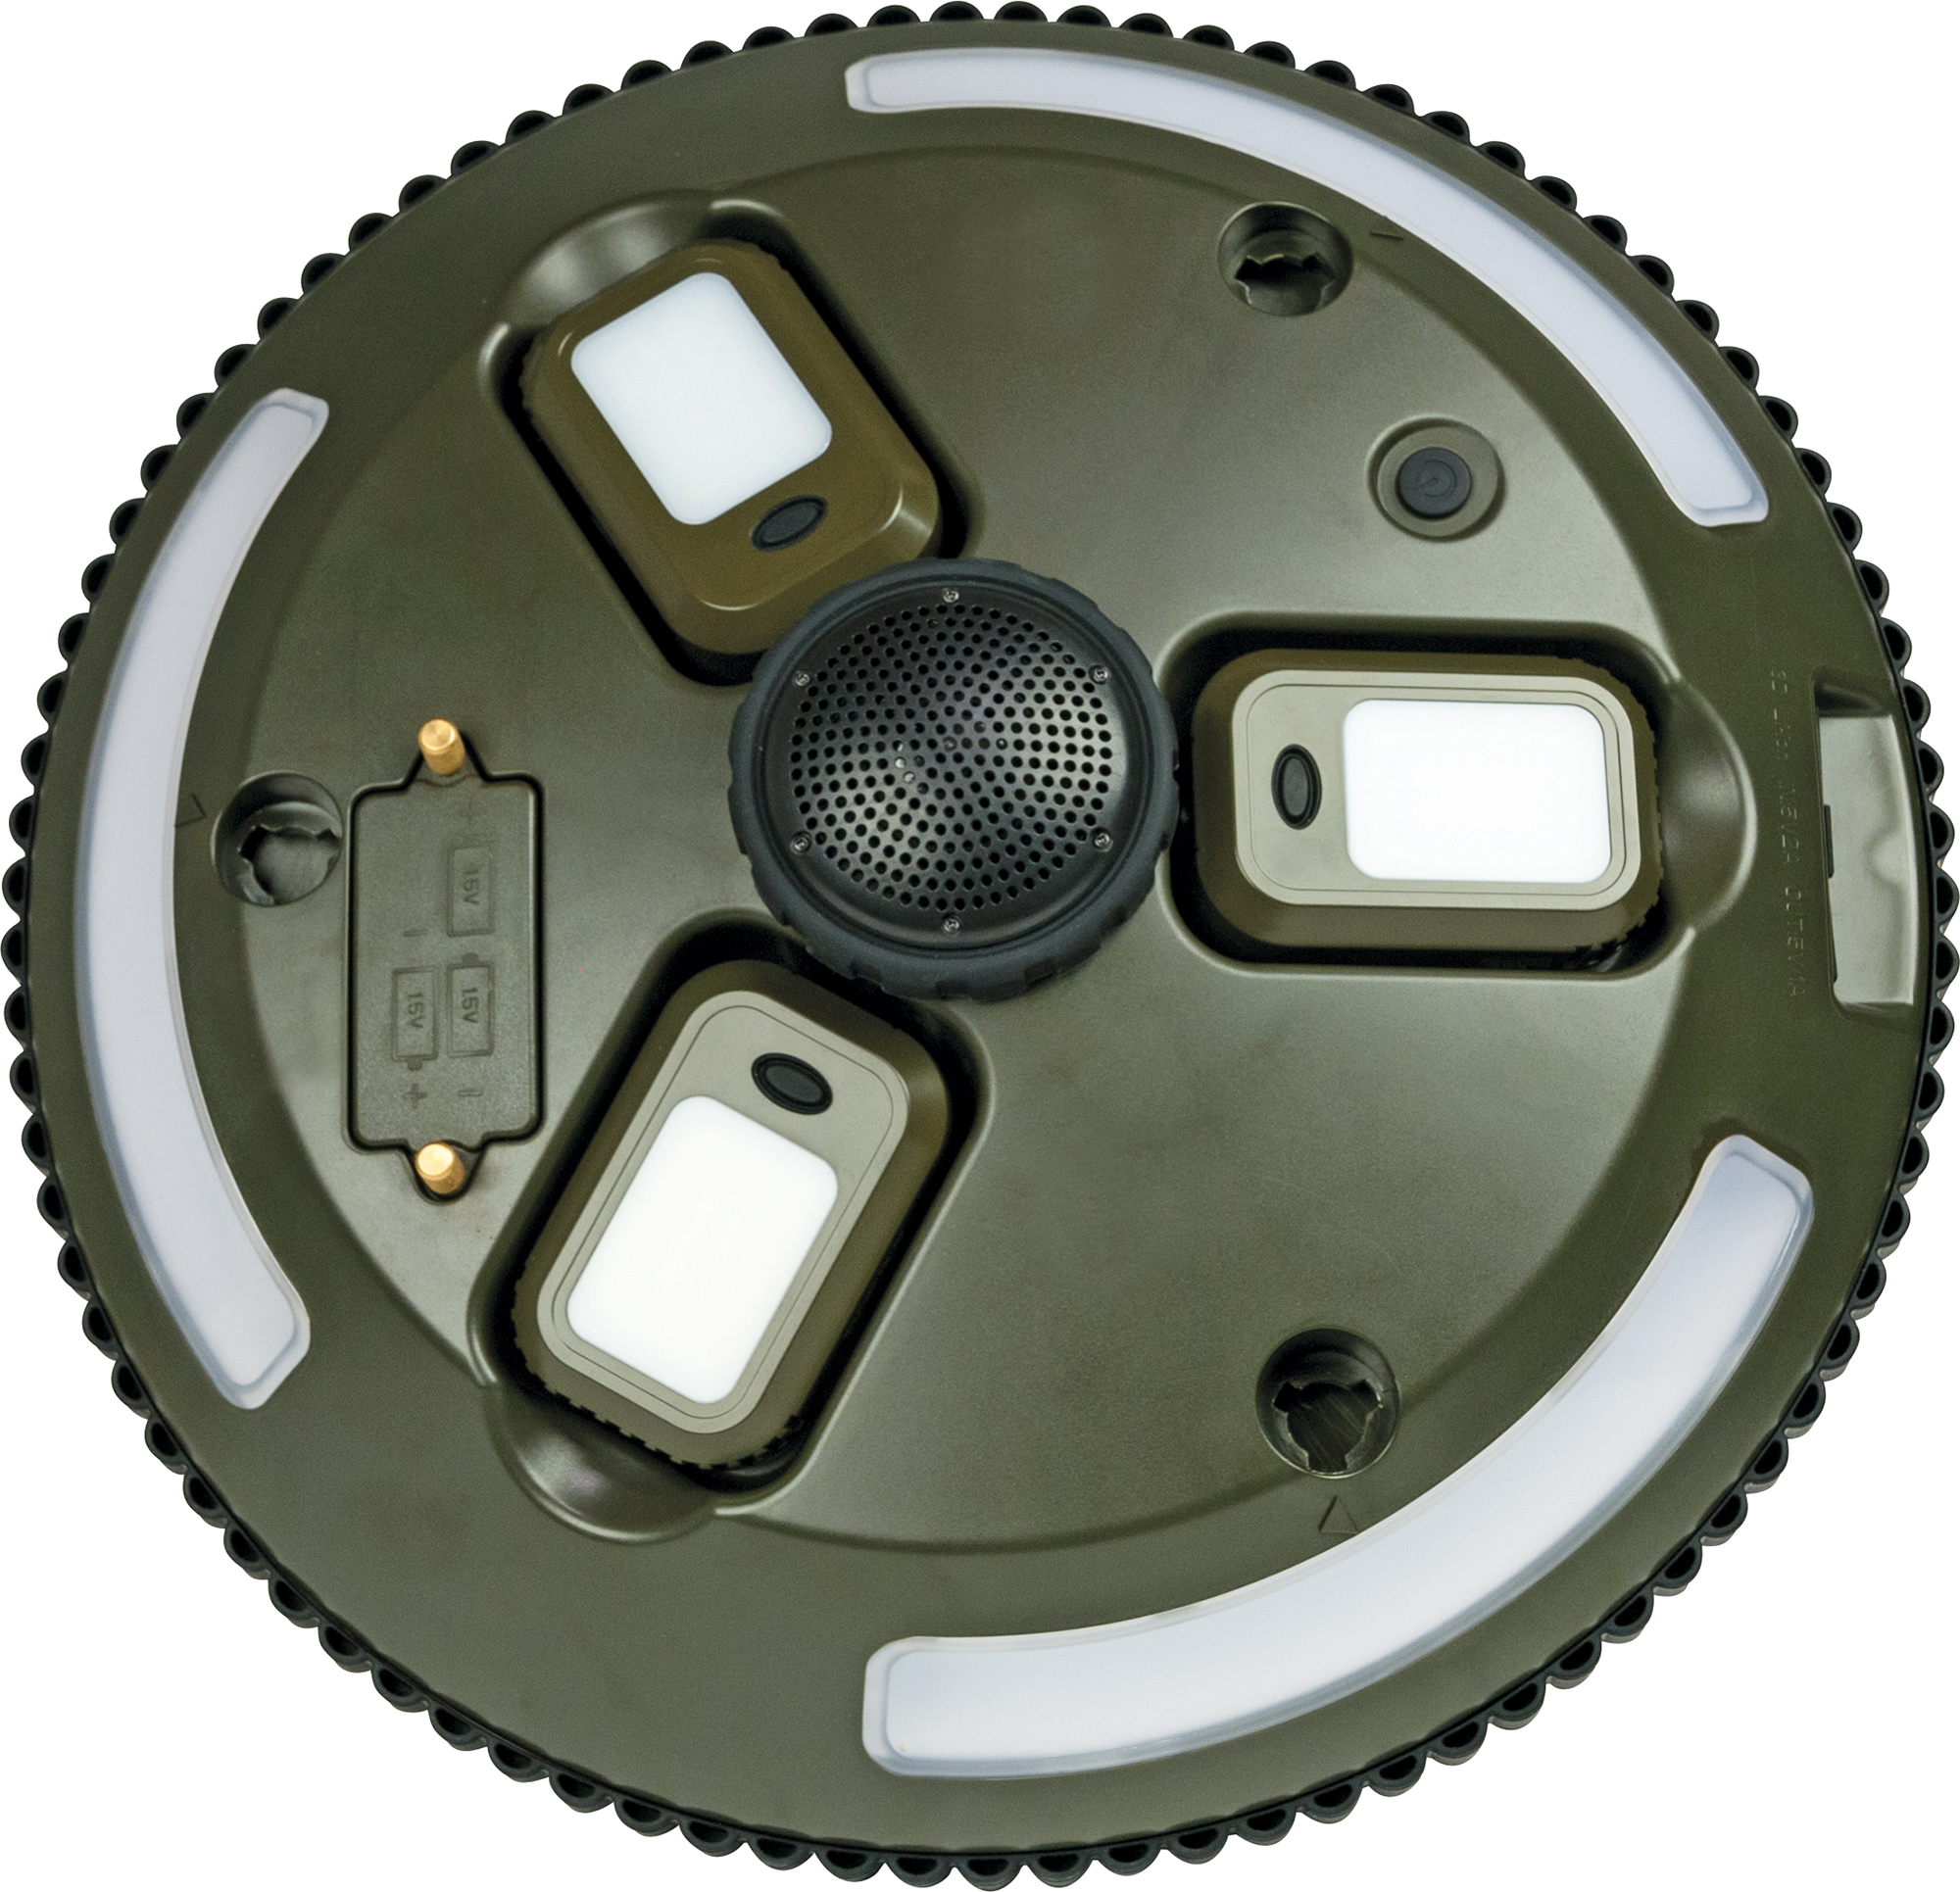 SCHWAIGER -CALED200 mit Leuchten Stativ Bluetooth® sowie abnehmbaren 511- auf LED-Campingleuchte Lautsprecher